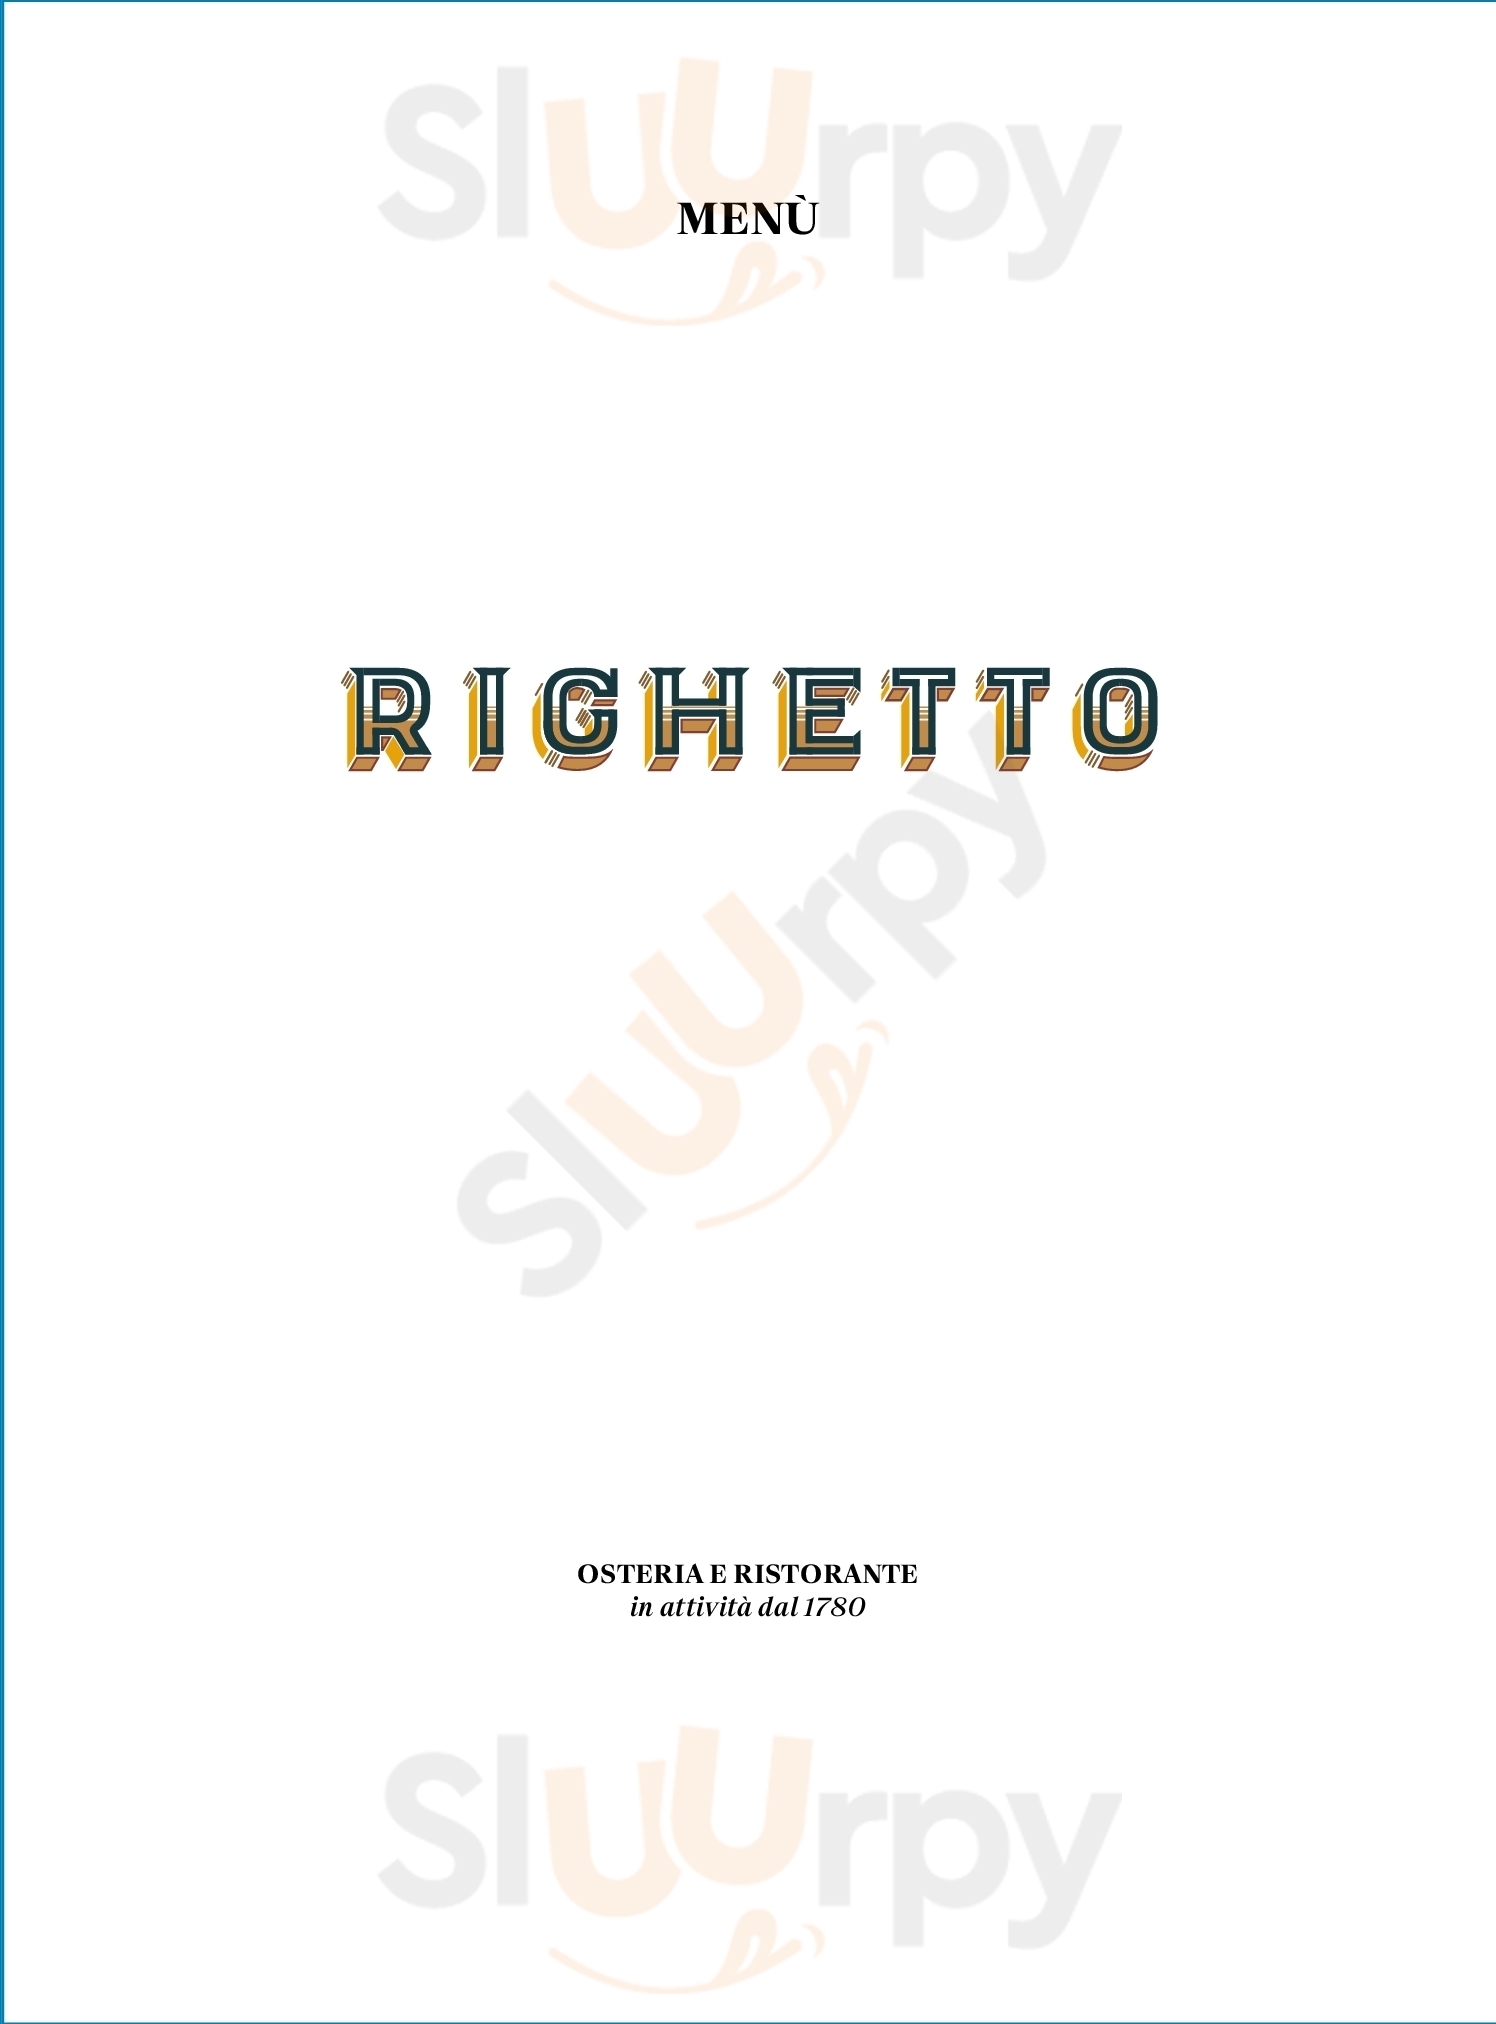 Righetto - Antica Osteria Quinto di Treviso menù 1 pagina